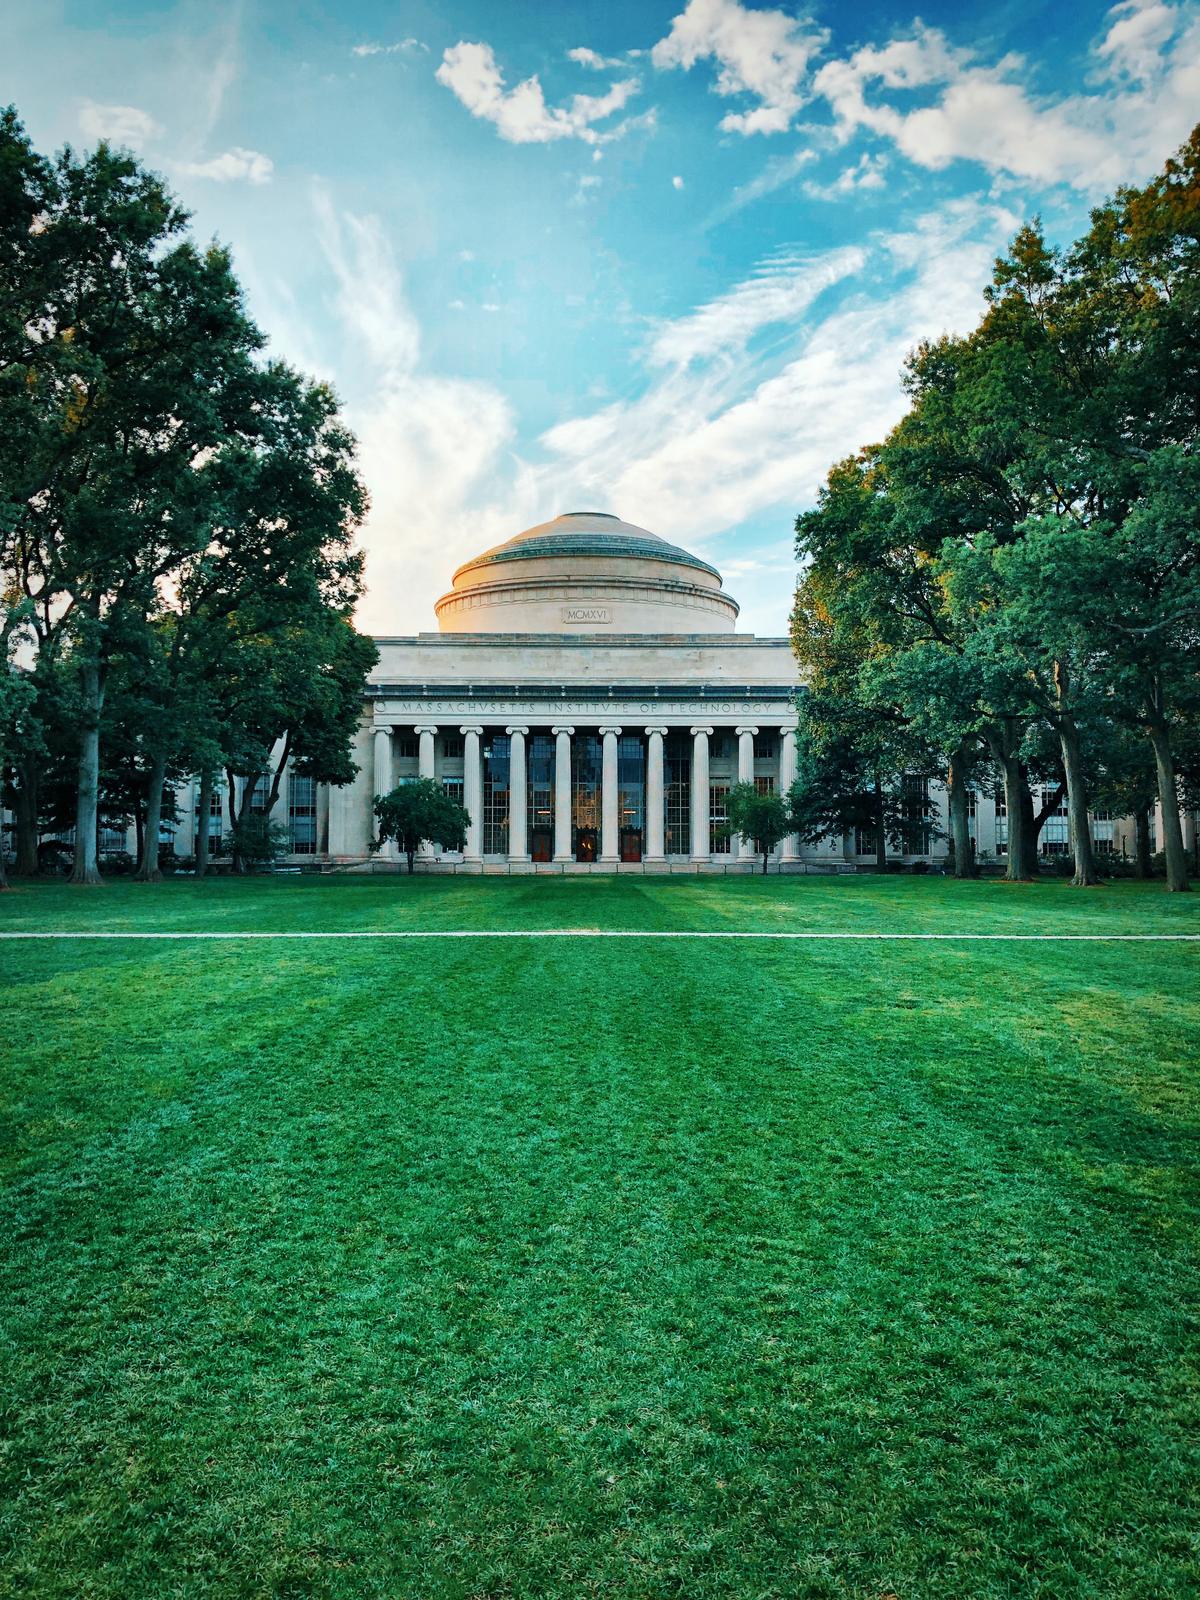 From Homeschooler to MIT Professor